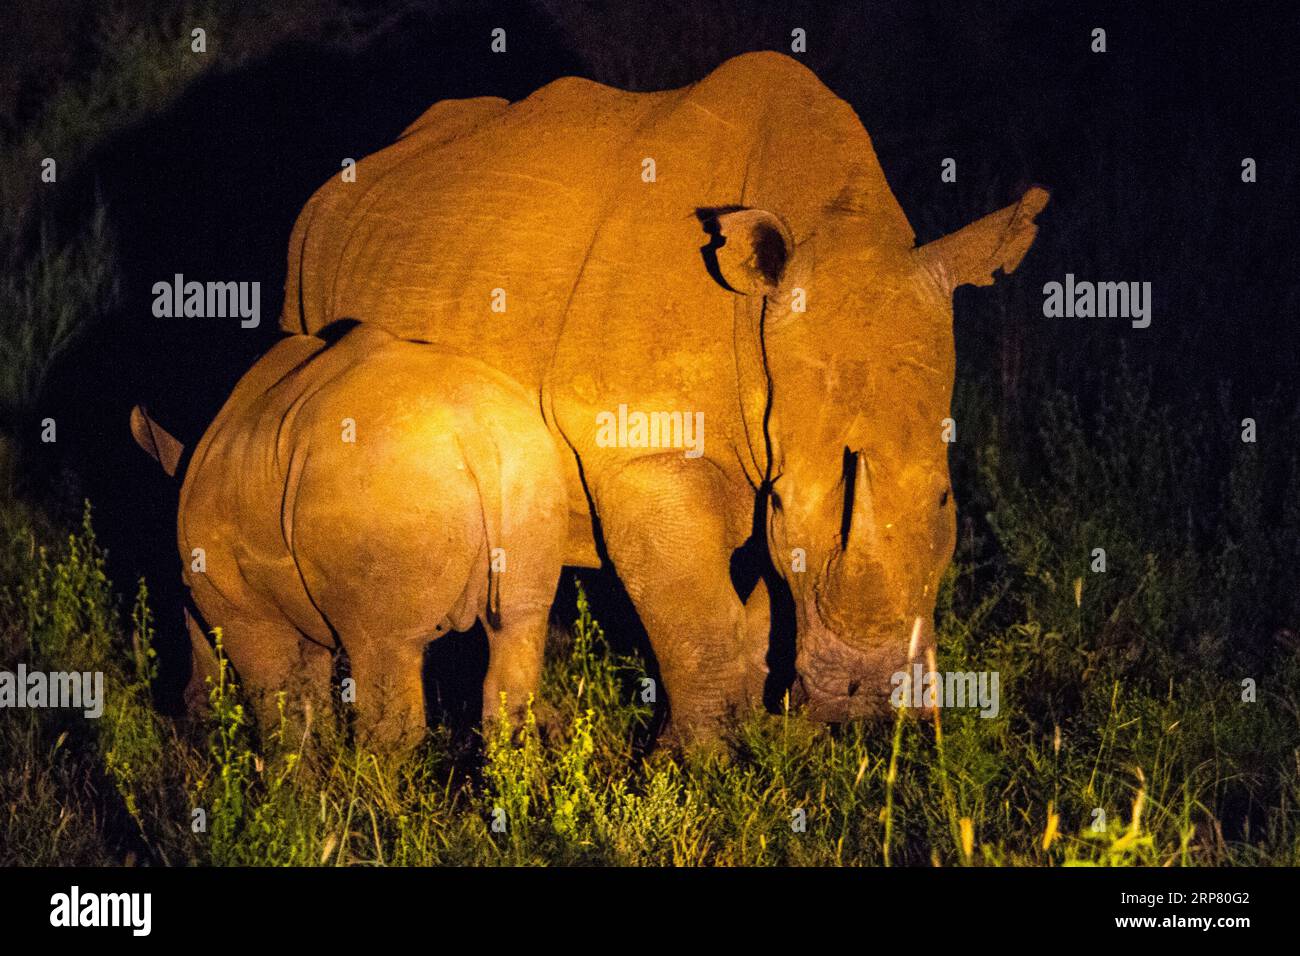 White rhino with young white rhino, night shot, Madikwe Game Reserve, Zeerust, South Africa Stock Photo